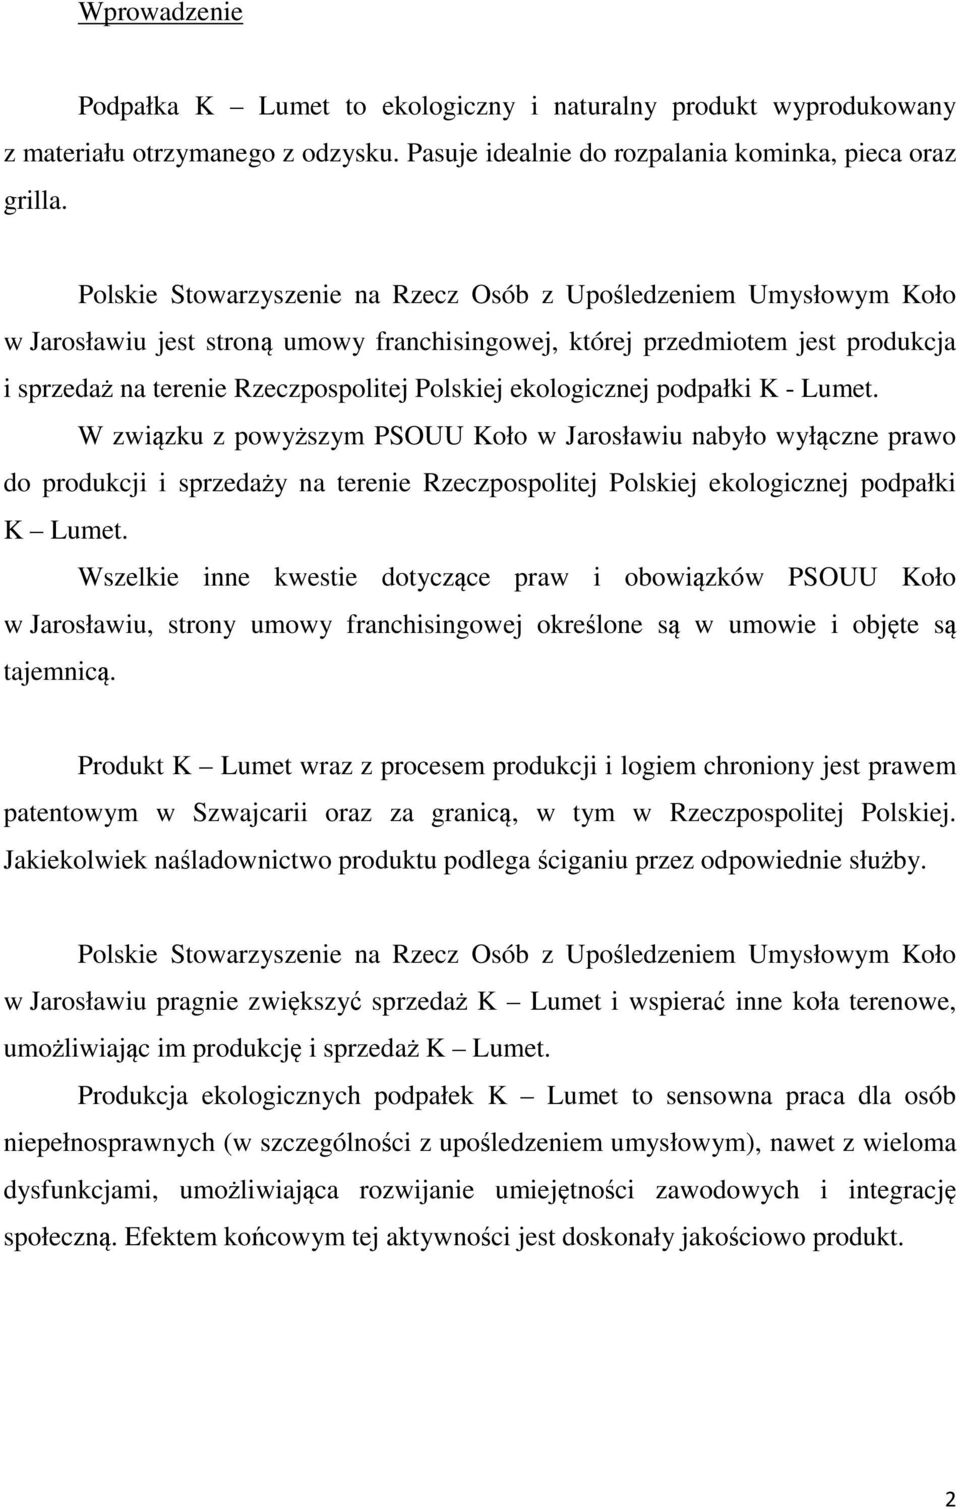 ekologicznej podpałki K - Lumet. W związku z powyższym PSOUU Koło w Jarosławiu nabyło wyłączne prawo do produkcji i sprzedaży na terenie Rzeczpospolitej Polskiej ekologicznej podpałki K Lumet.